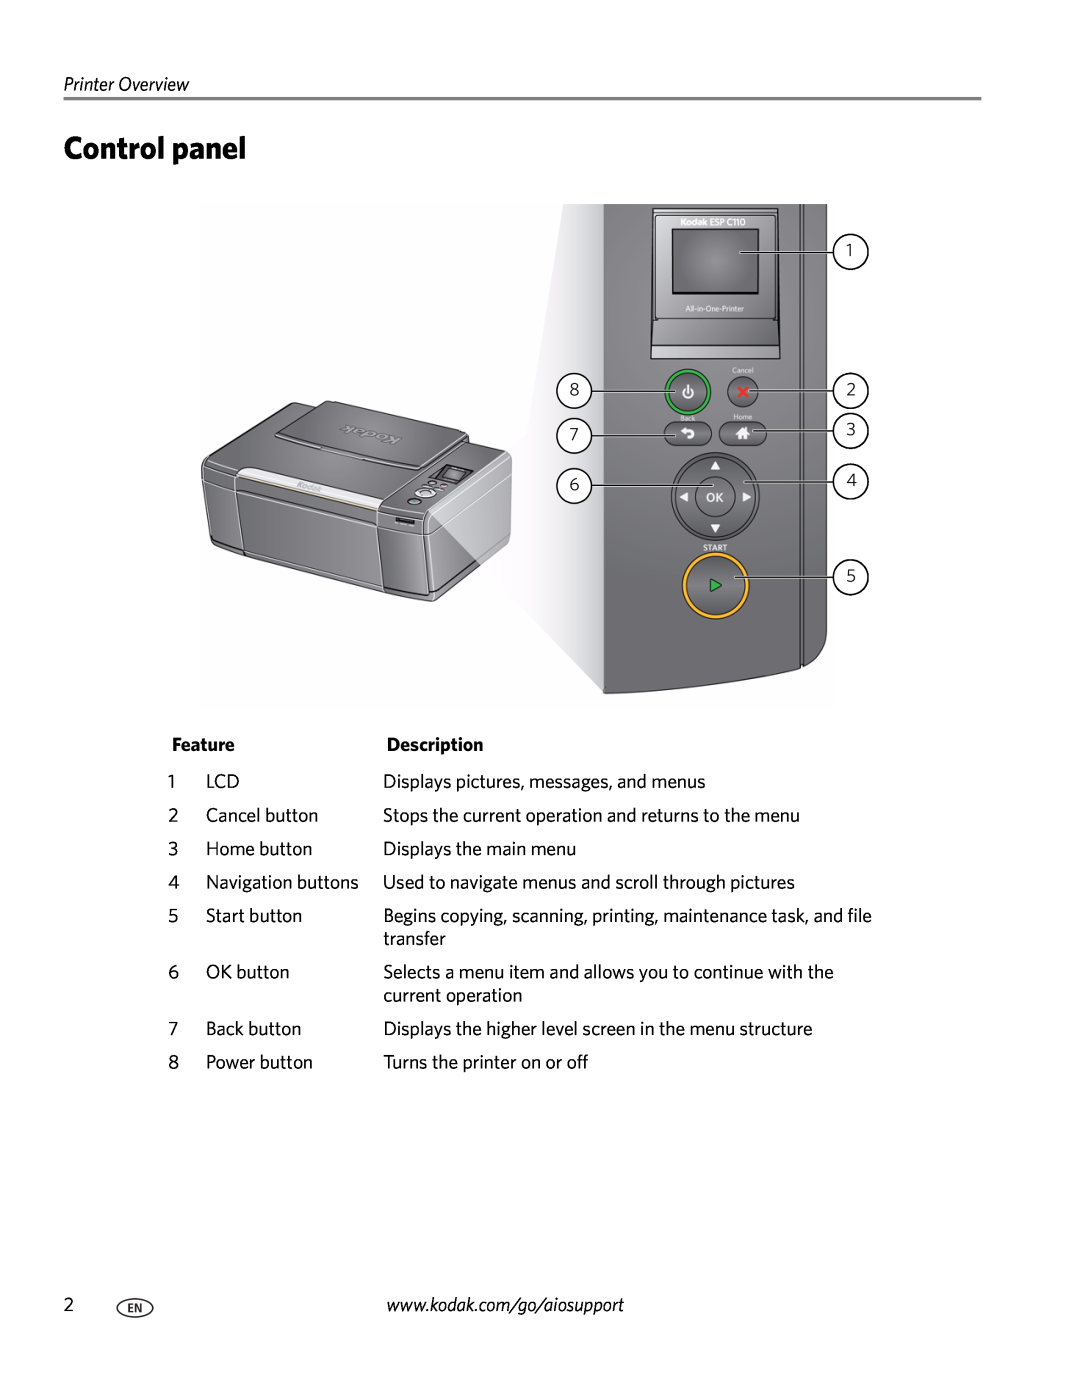 Kodak C110 manual Control panel, Feature, Description 